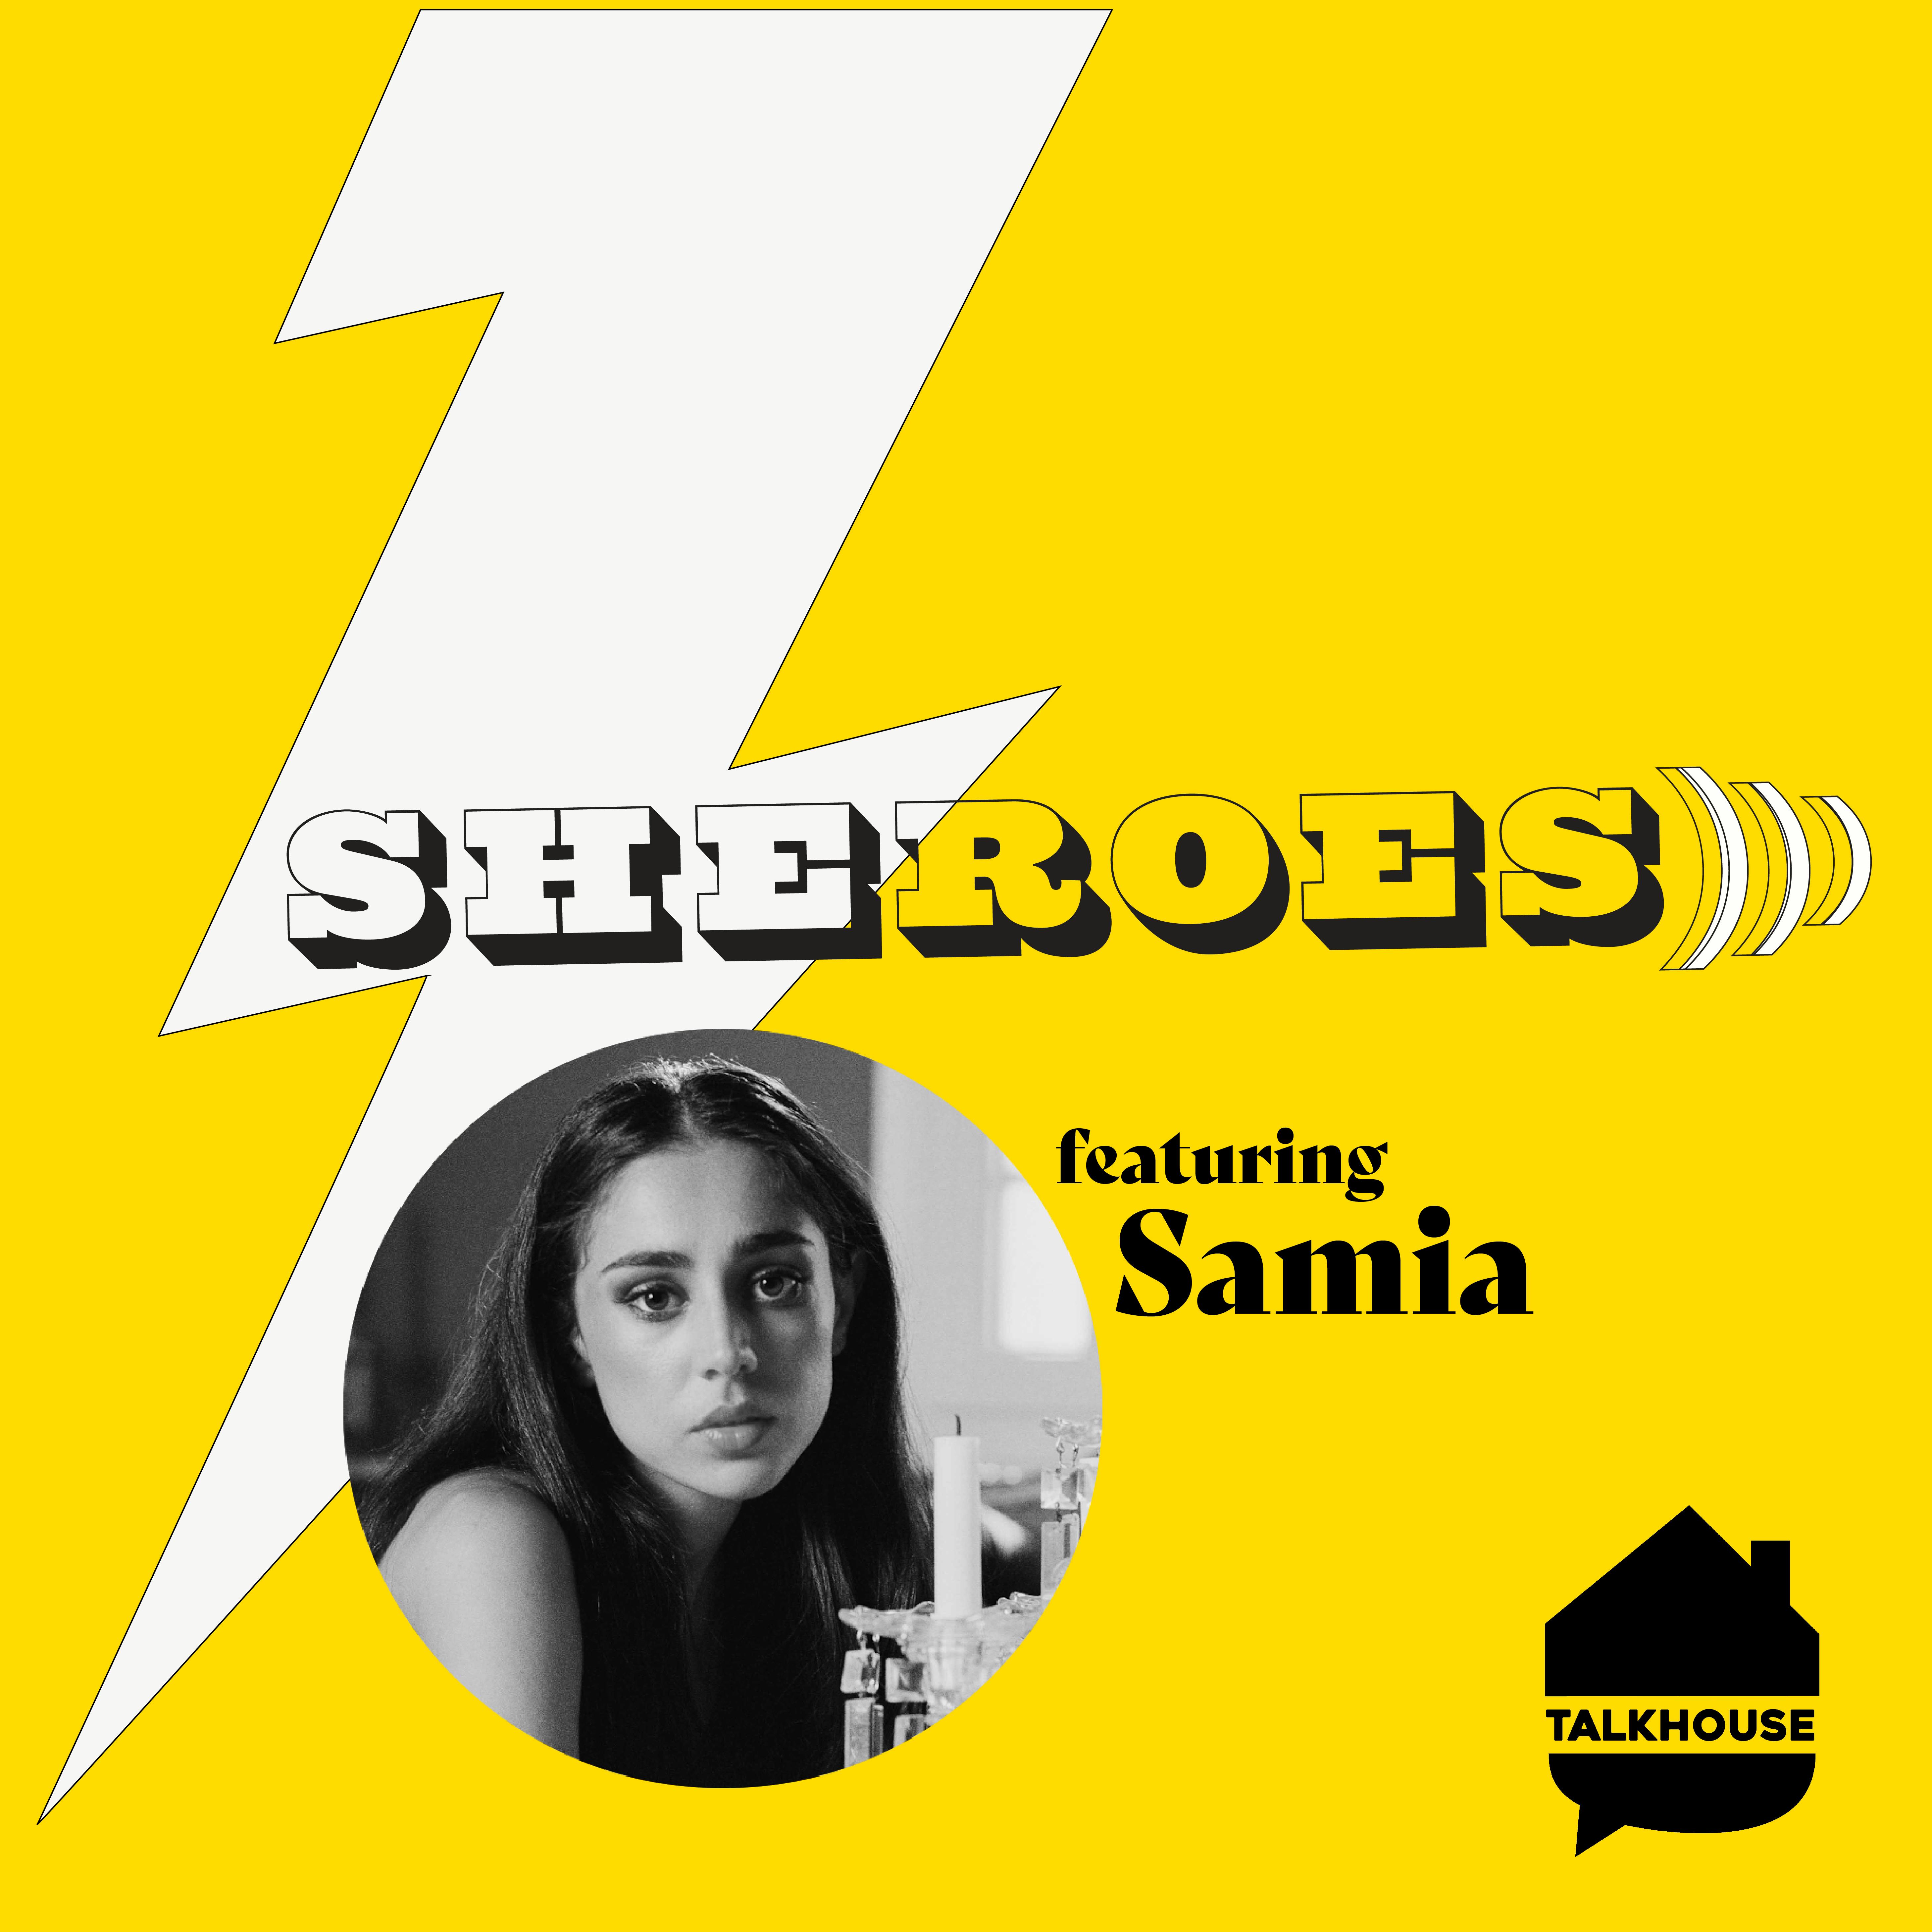 A SHERO's Journey: Samia